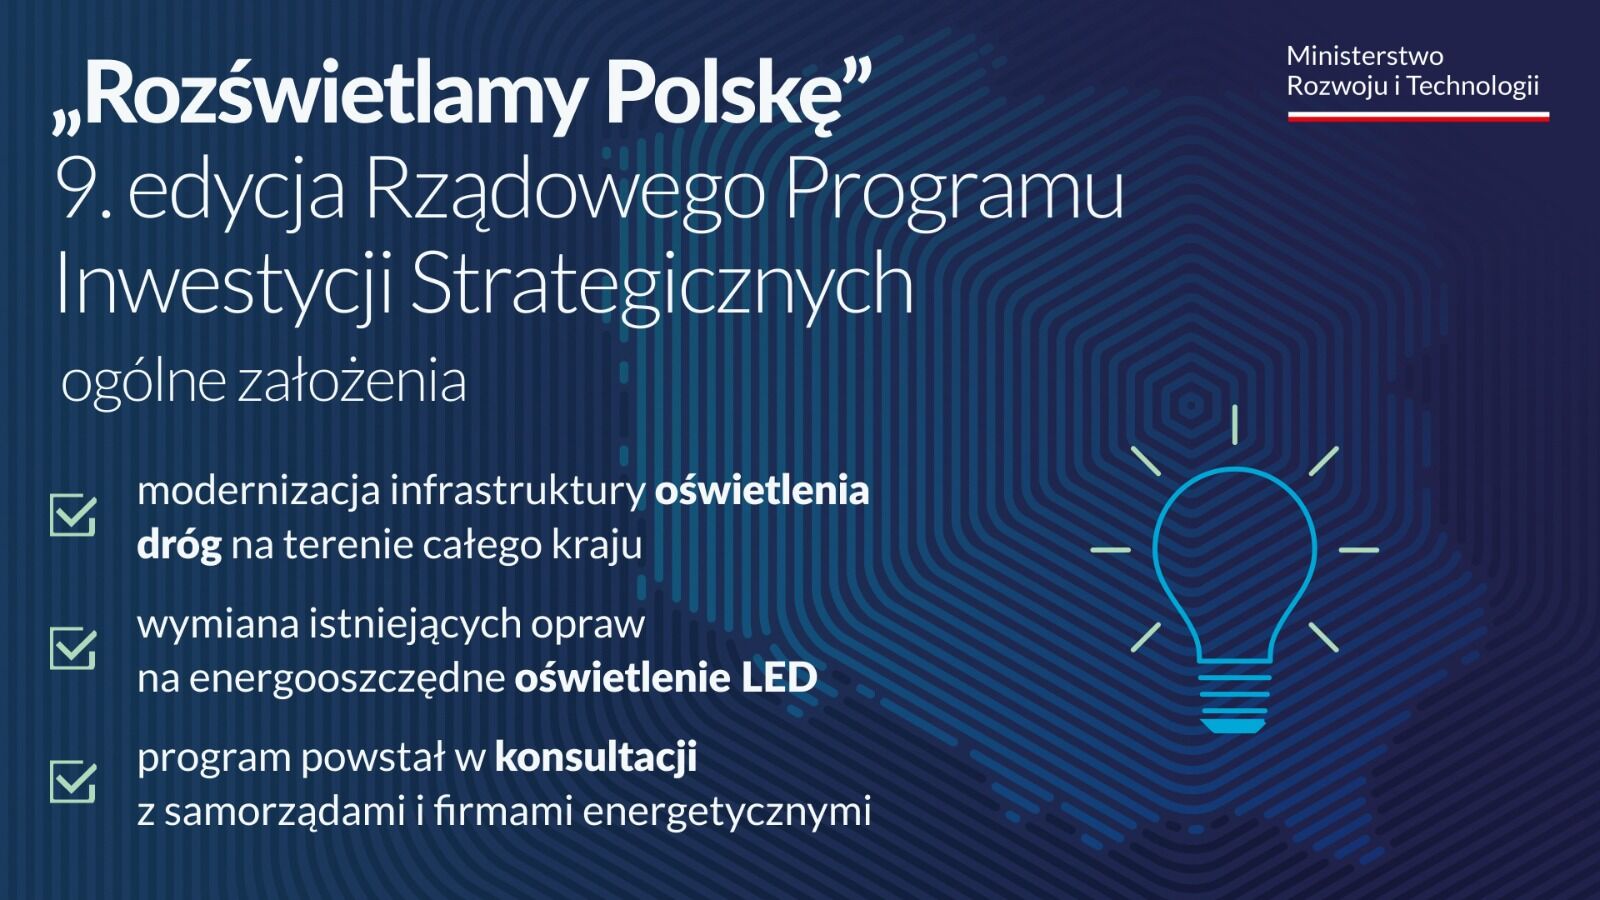 Opis zdjęcia: Grafika informacyjna z napisem Rozświetlamy Polskę, dotycząca 9. edycji Rządowego Programu Inwestycji Strategicznych. Zawiera ikony żarówki i dróg, tekst o modernizacji oświetlenia z użyciem technologii LED oraz akcenty graficzne w kolorach 